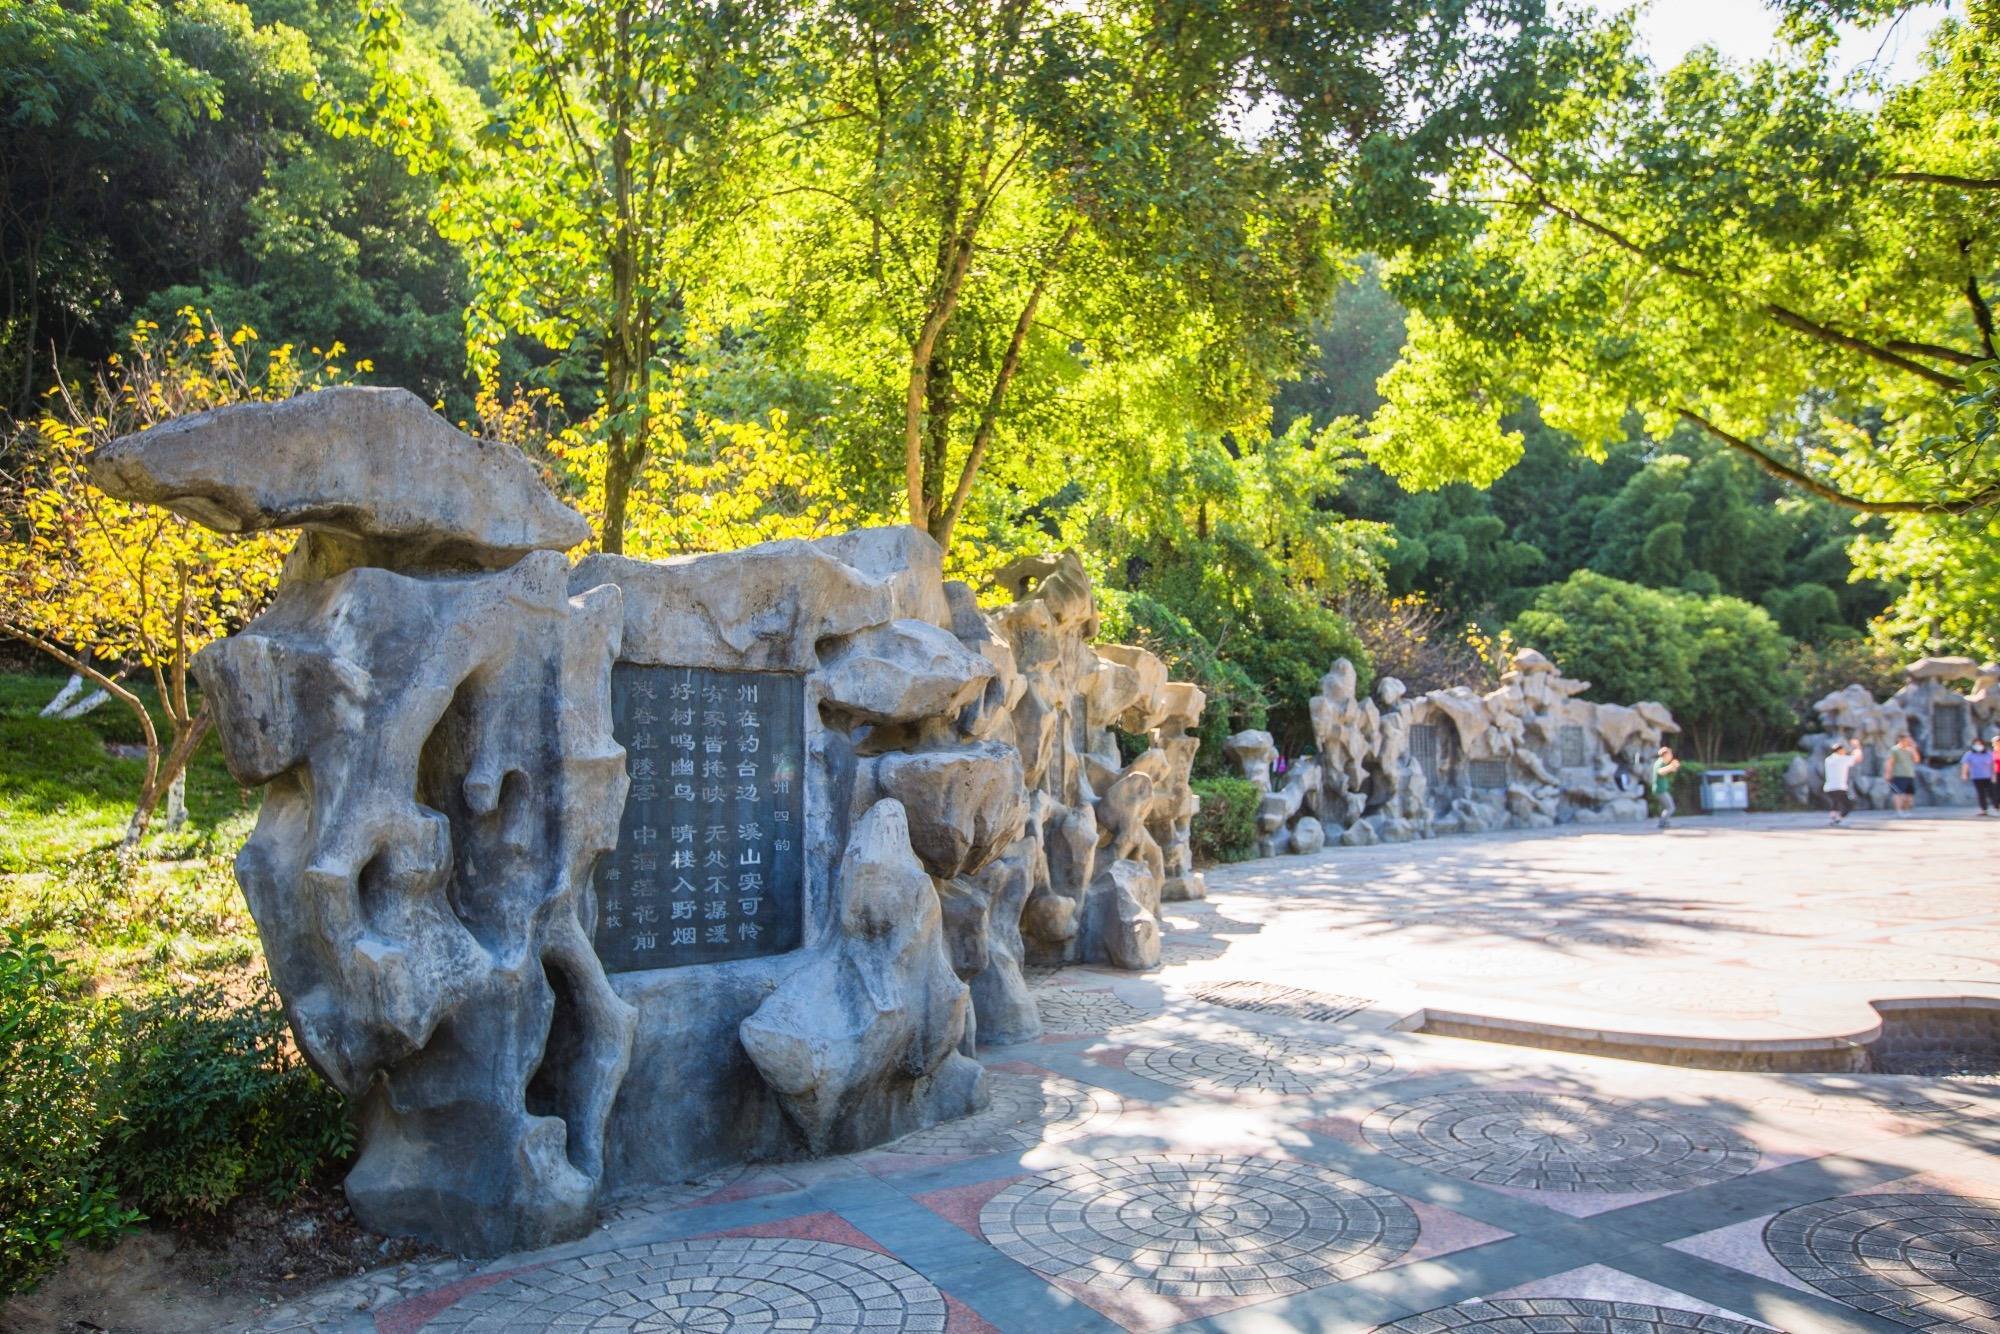 杭州建德有一座白沙公园,环境优美,是市民休闲散心的好去处